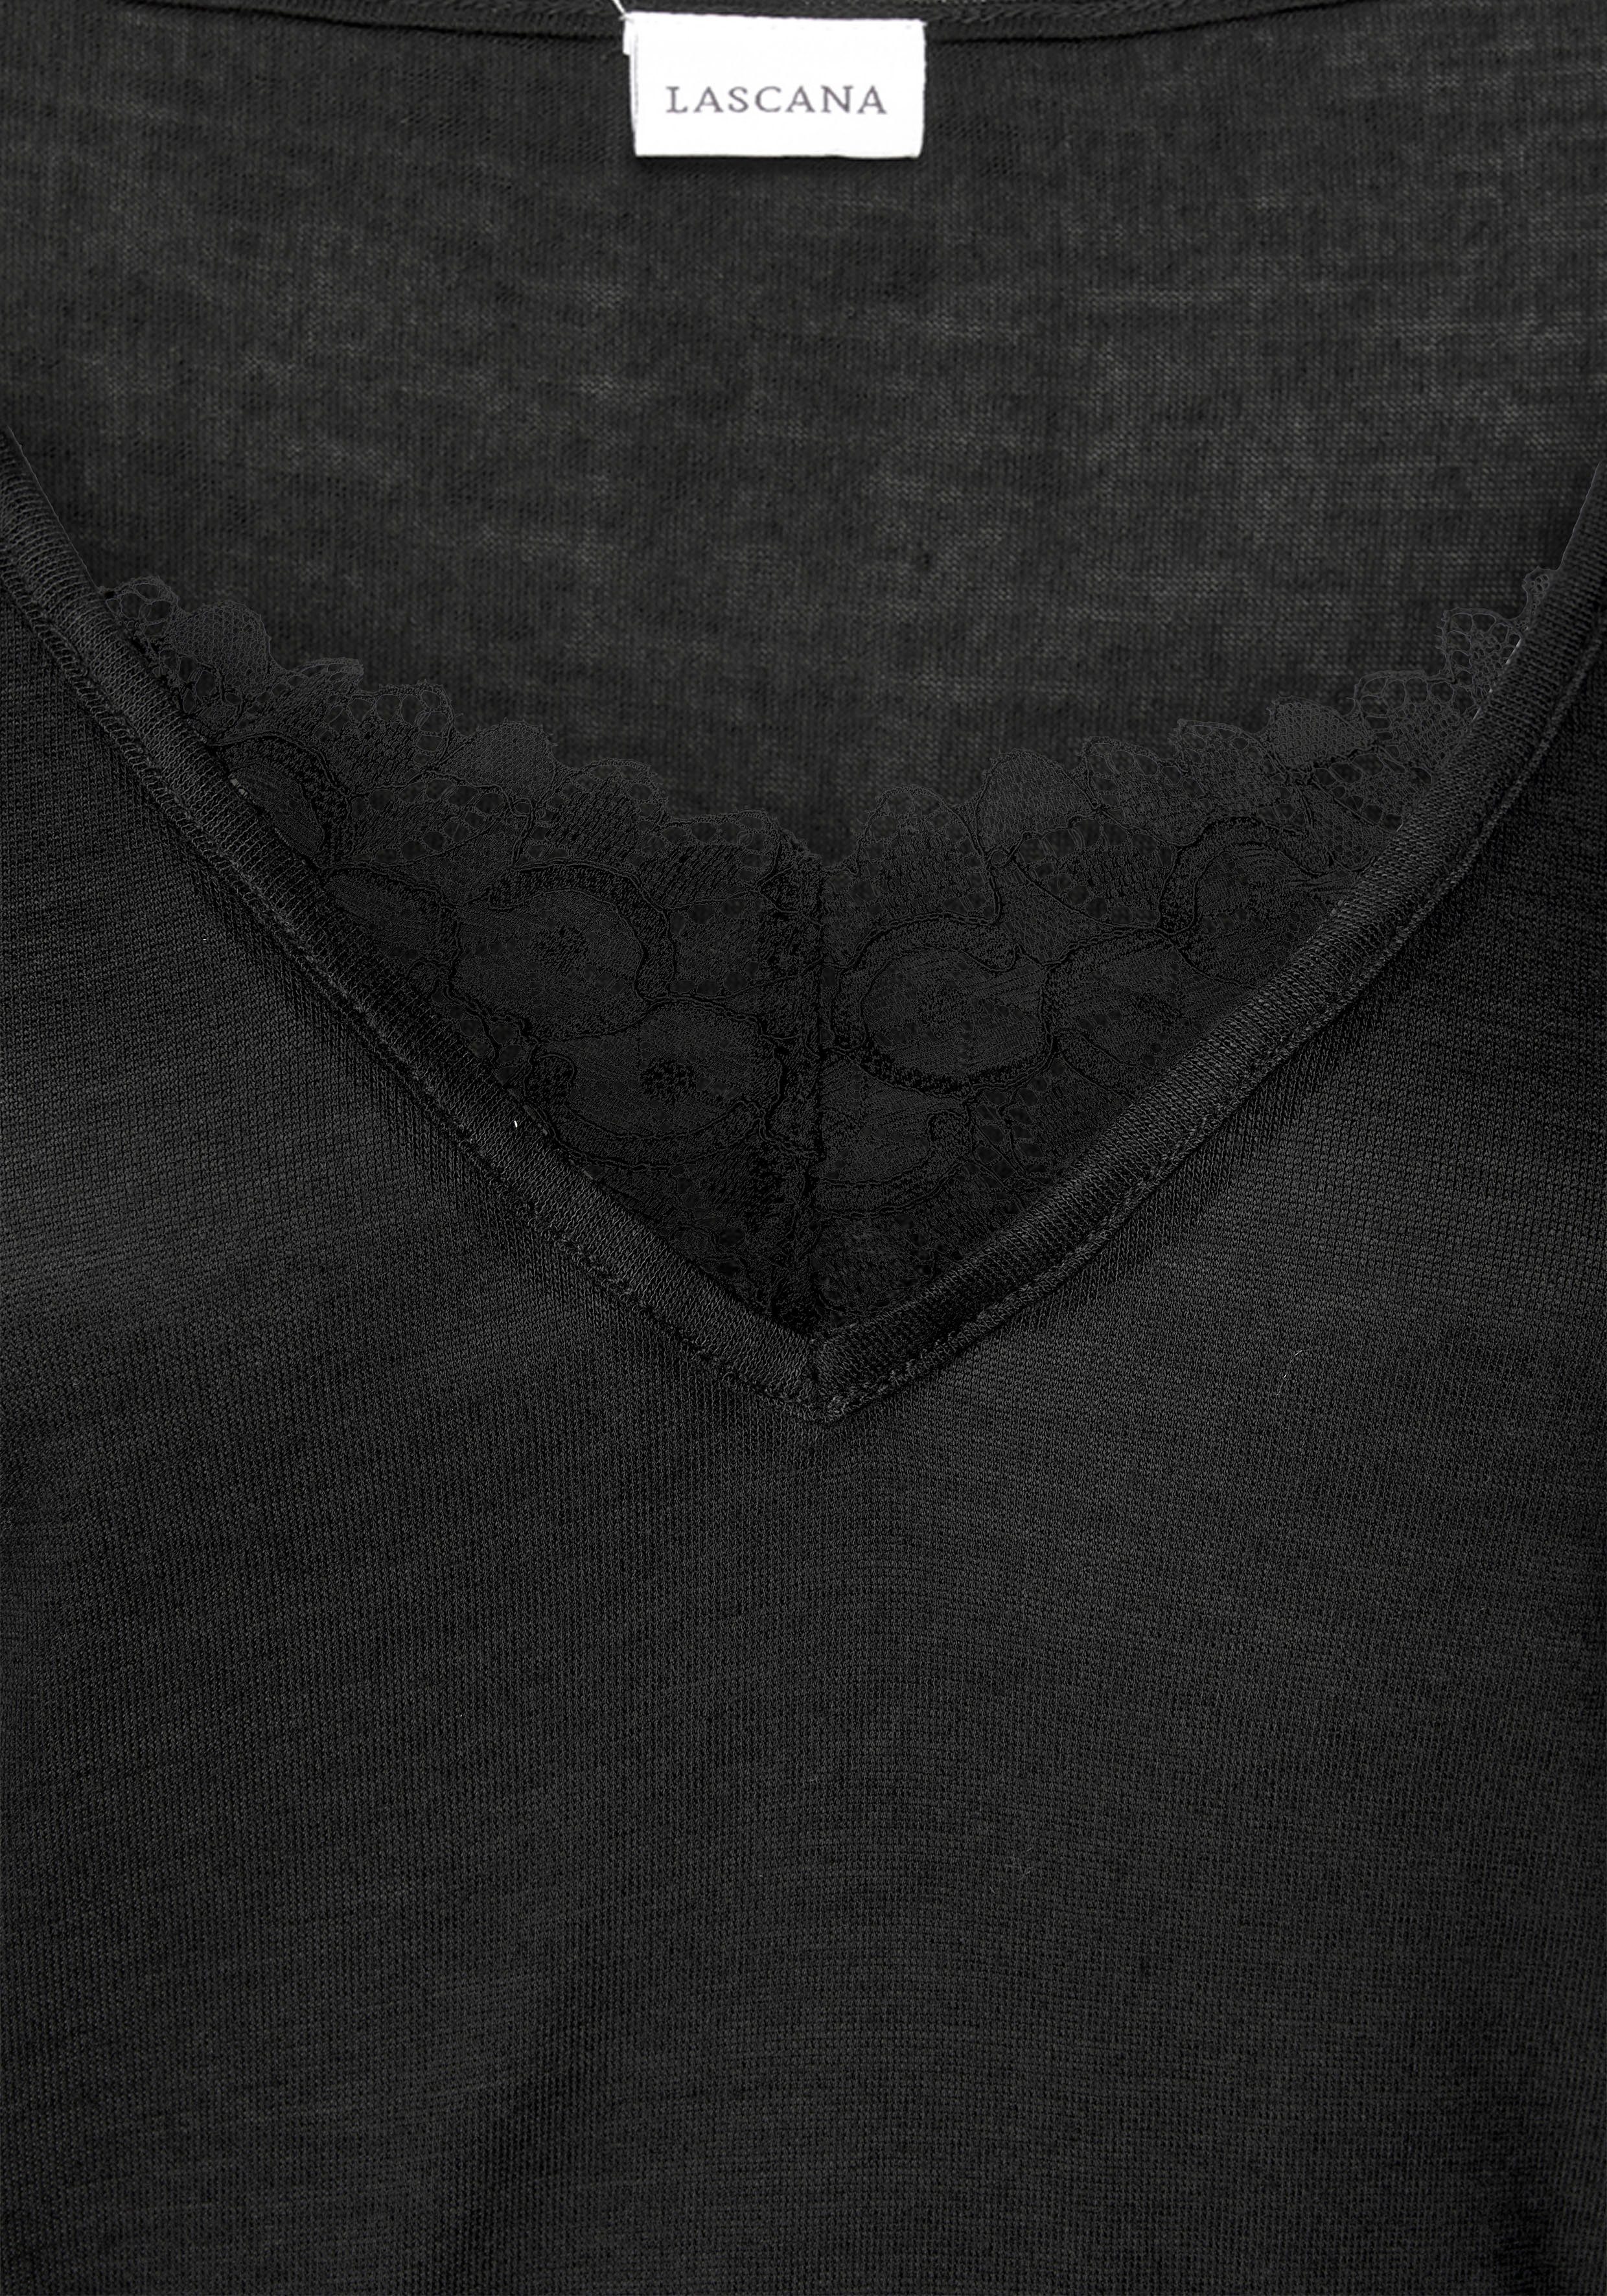 Nachthemd und halblangen schwarz Ärmeln mit LASCANA Spitzendetail